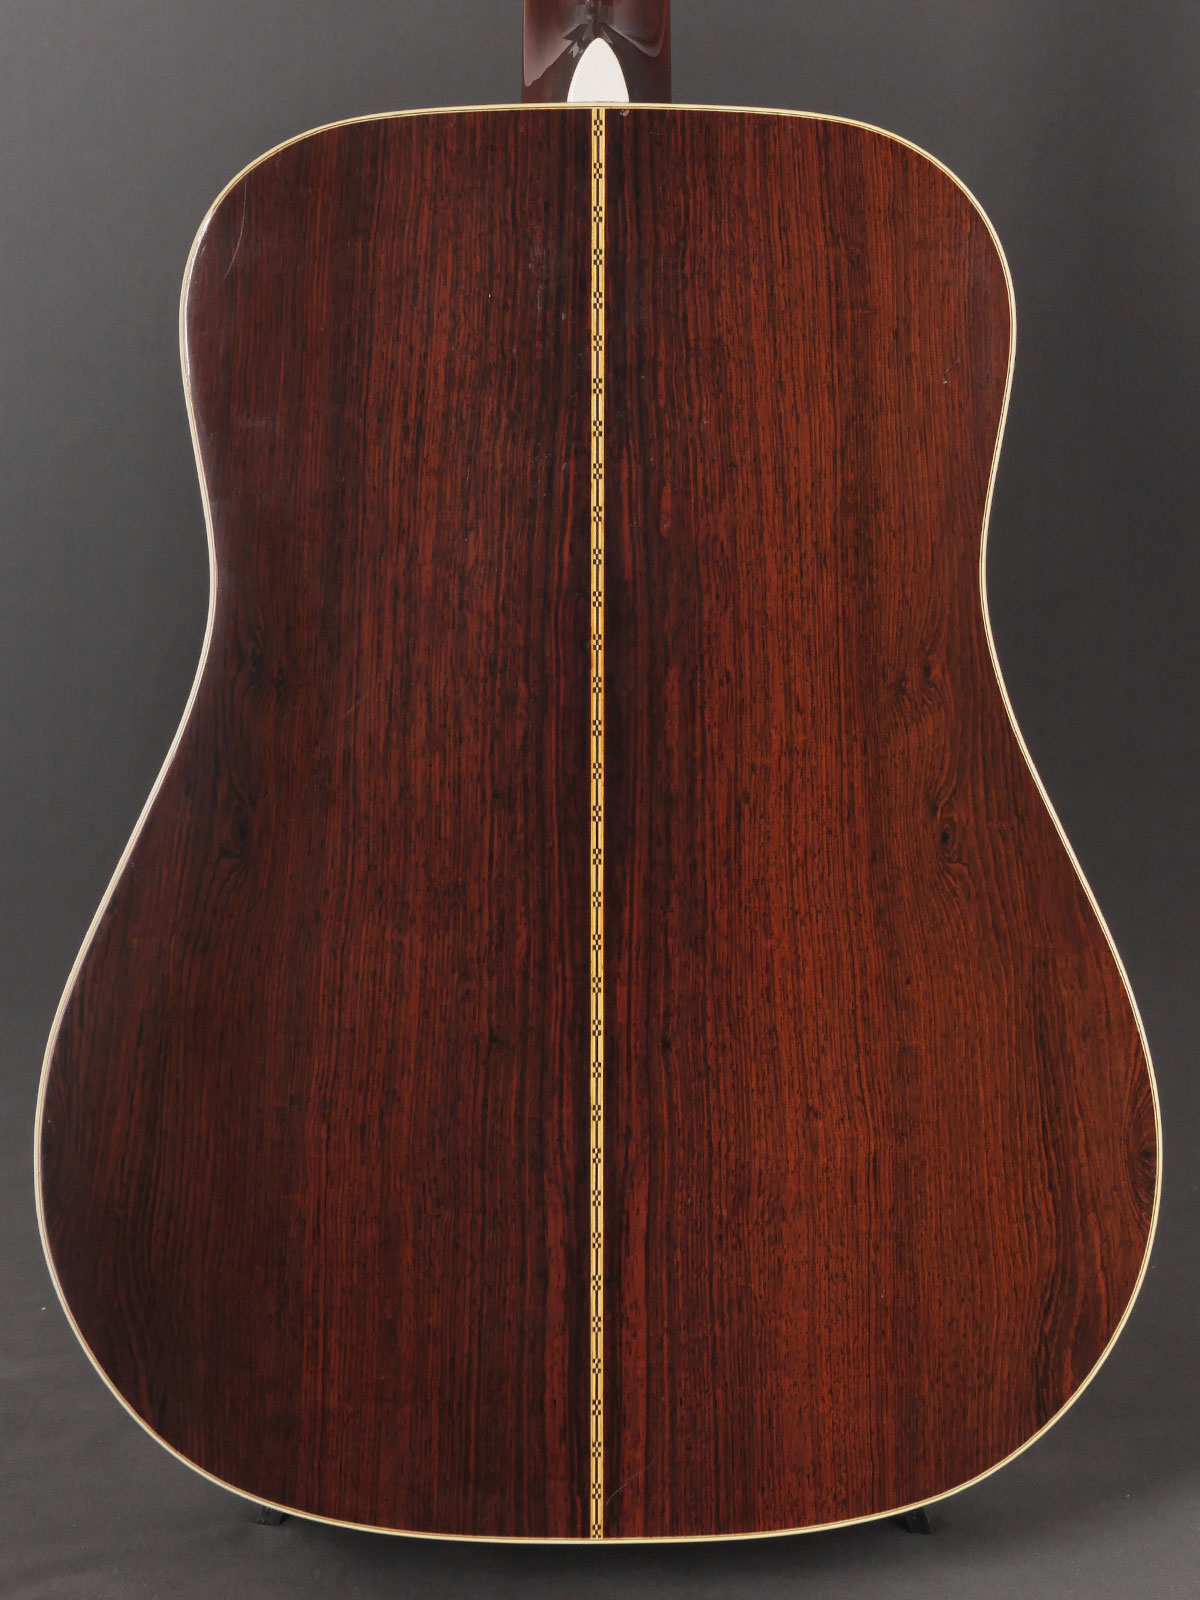 Le choix des bois pour un luthier D28-1013-BB